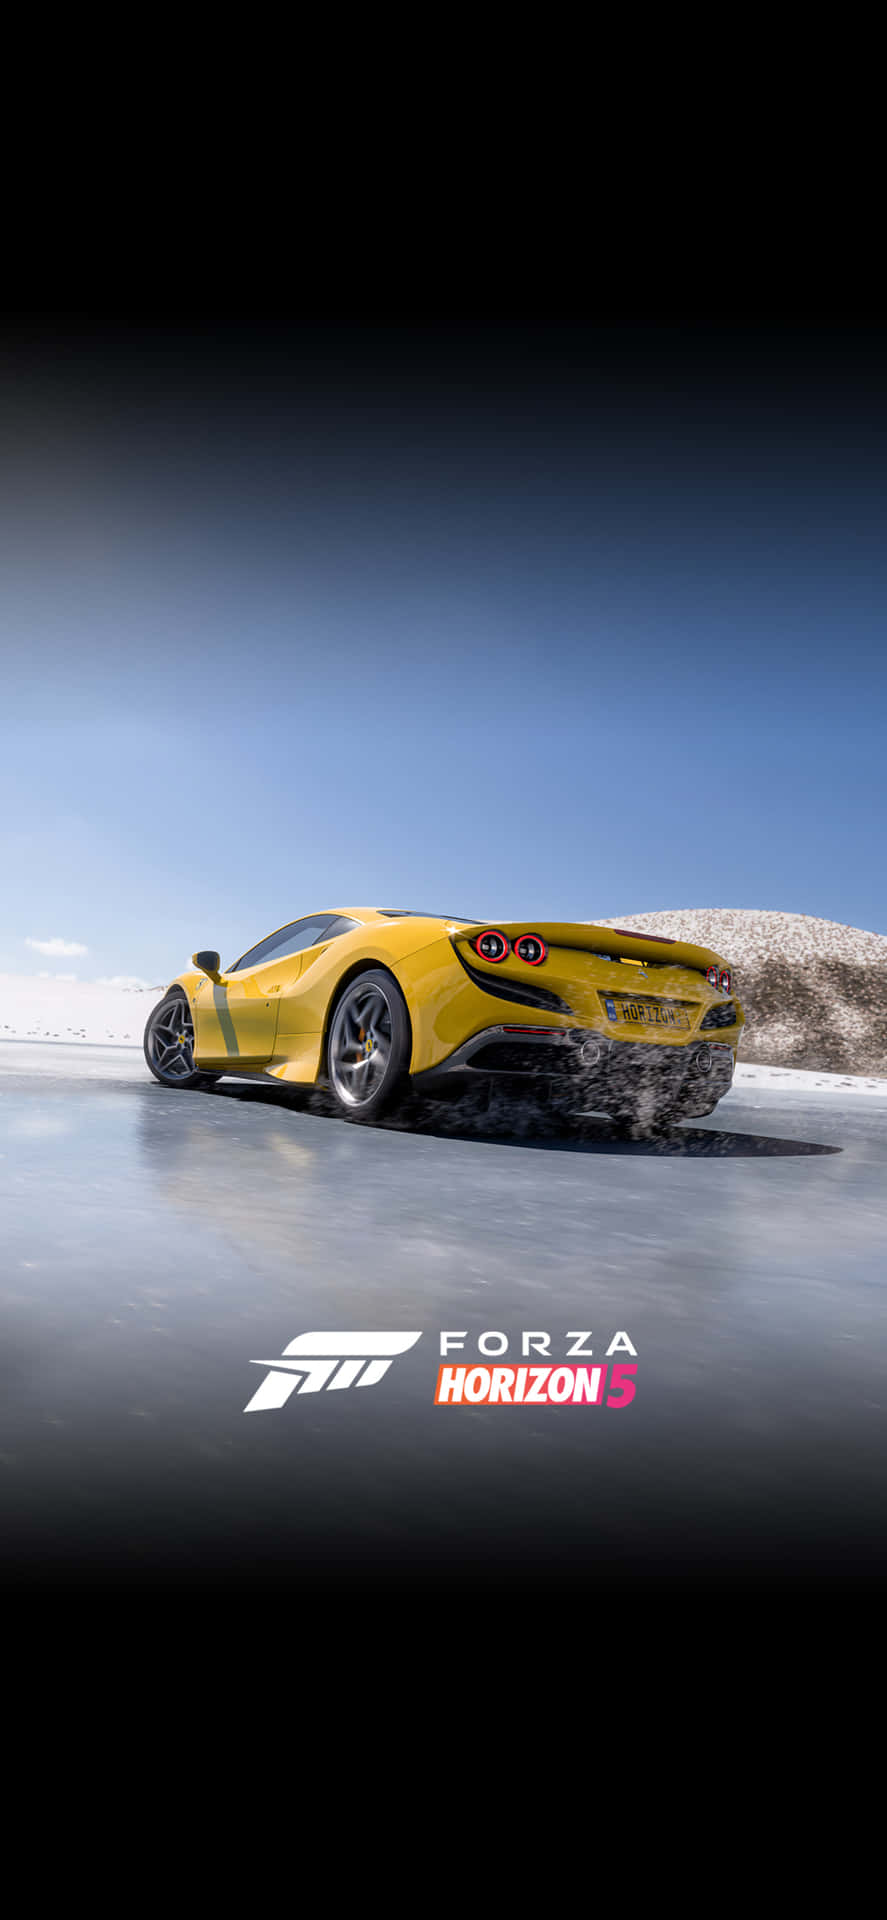 Schnellfahrender Lamborghini Iphone X Forza Motorsport 7 Hintergrund